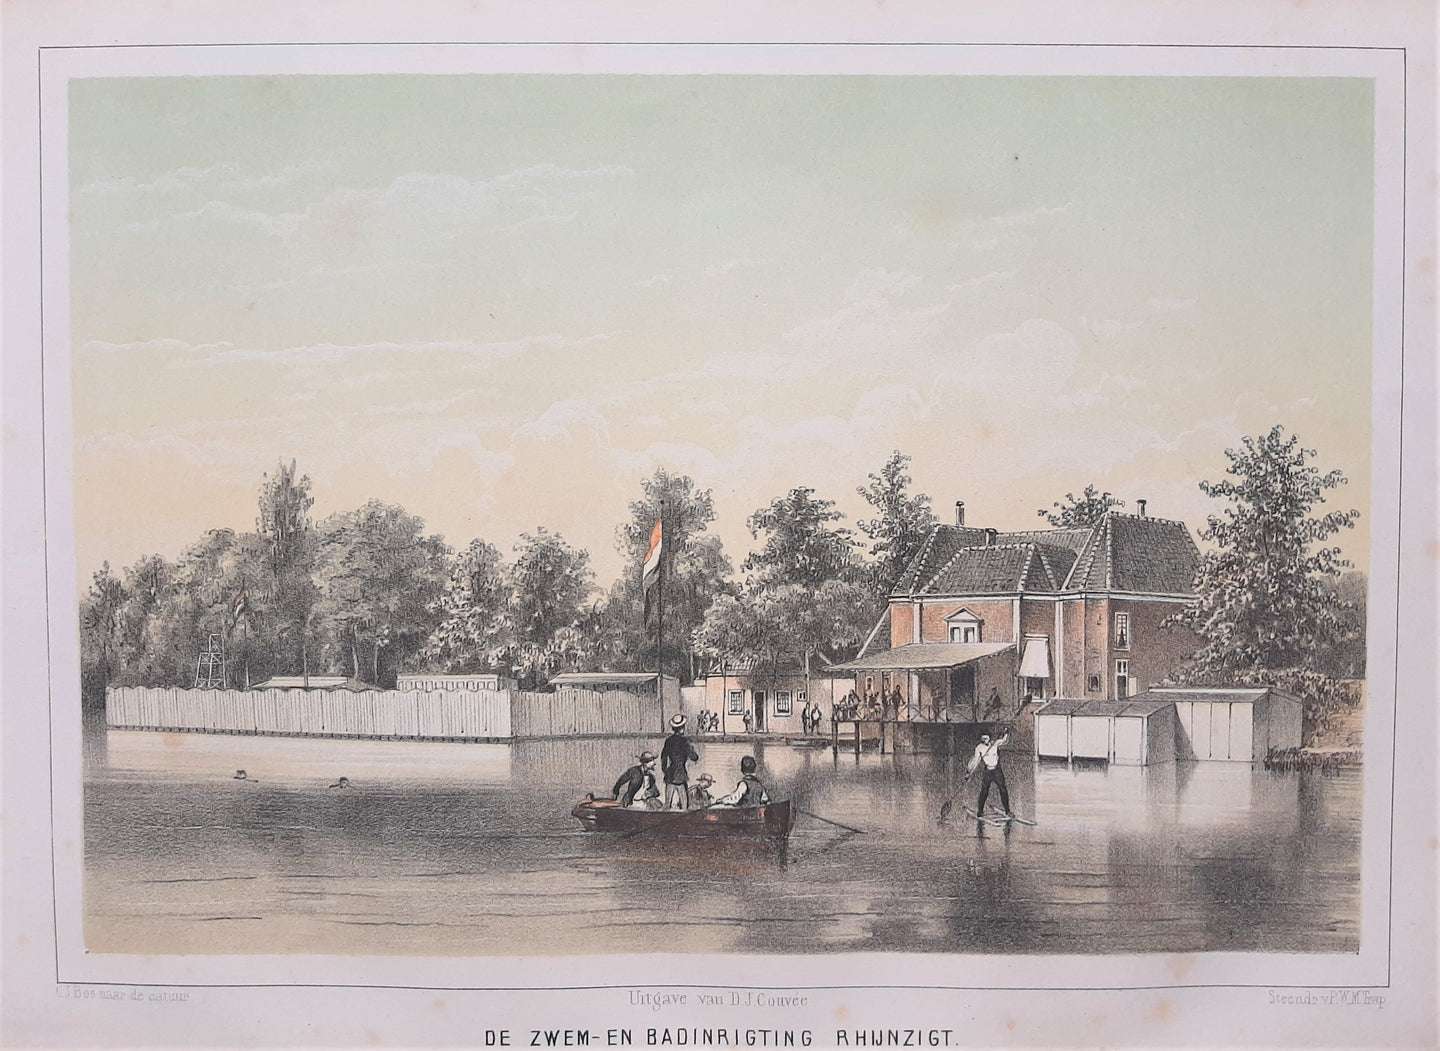 Leiden Zwembad Rhijnzicht - GJ Bos / PWM Trap / DJ Couvée - ca 1859